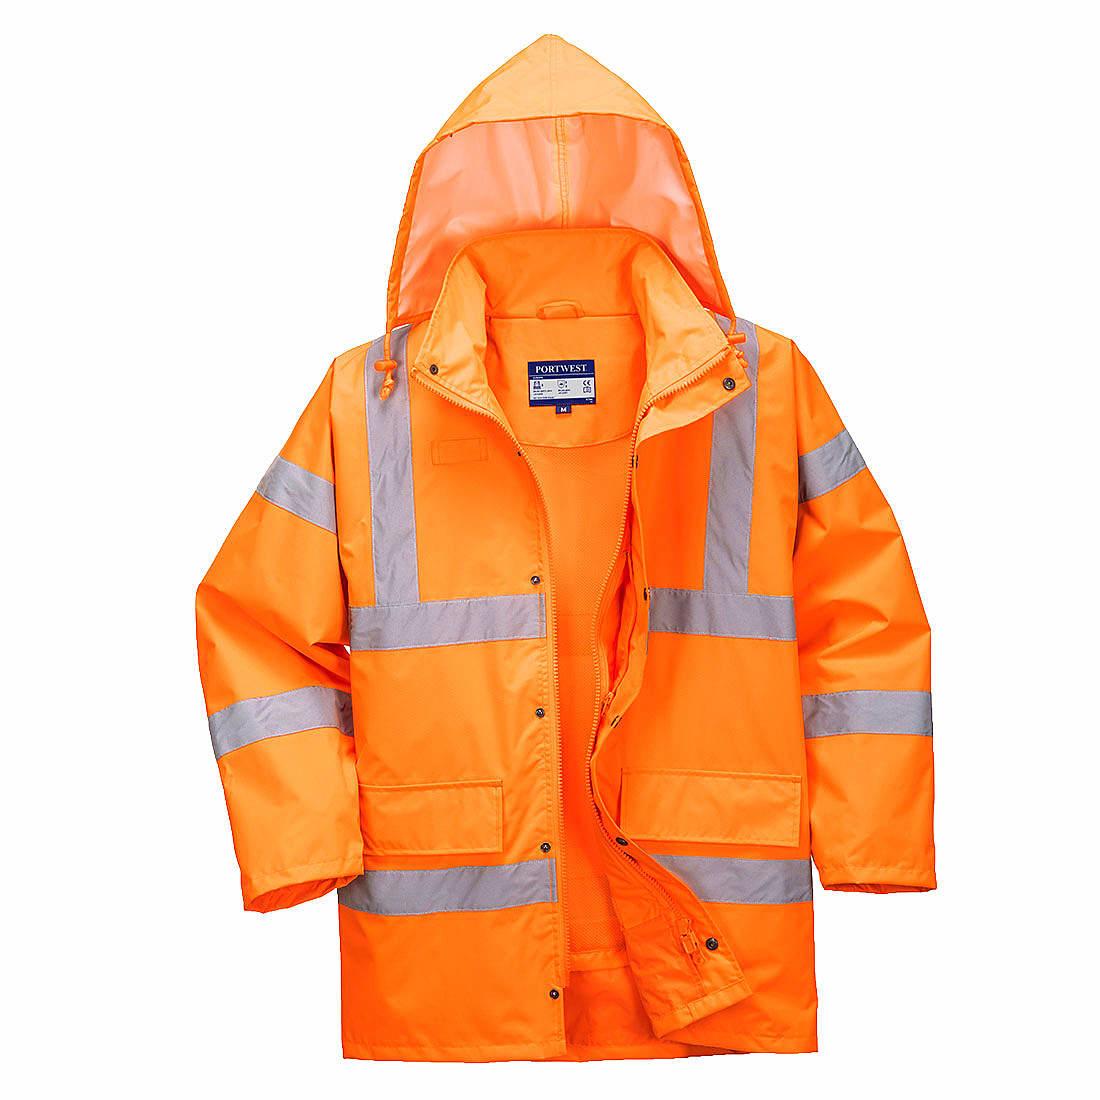 Portwest RT60 Hi-Viz Breathable Jacket in Orange (Product Code: RT60)